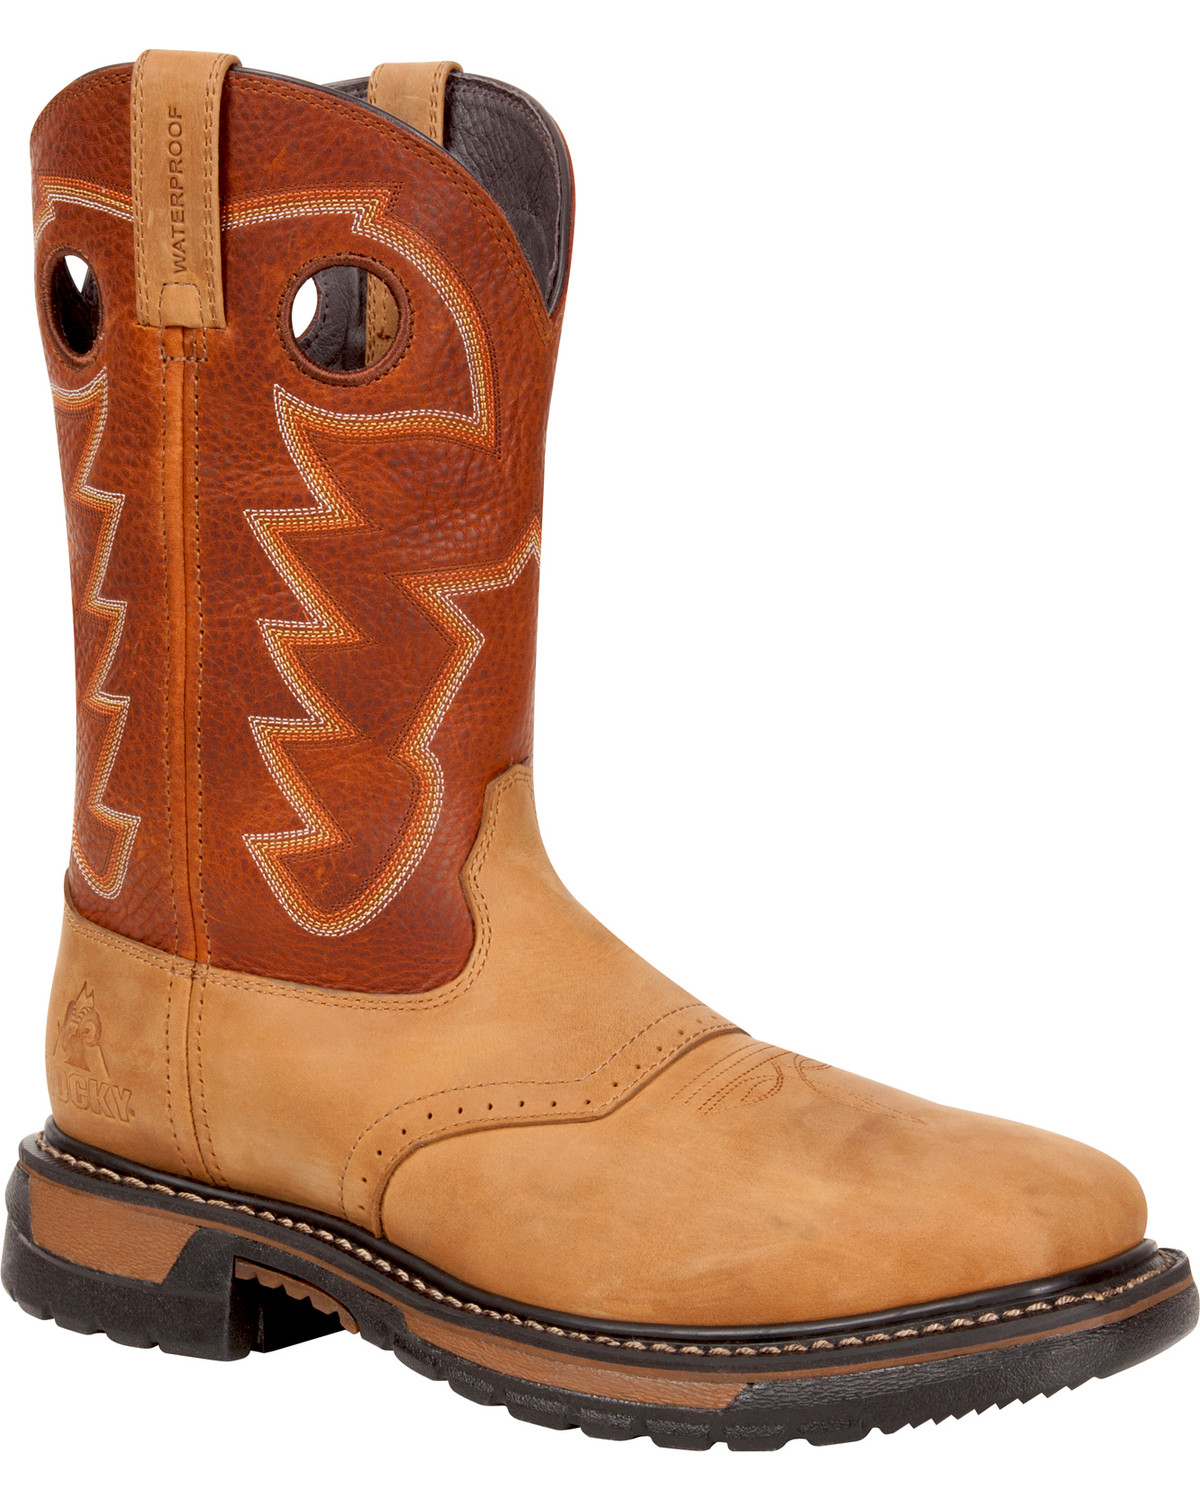 Rocky Men's Original Ride Waterproof Western Boots - Steel Toe